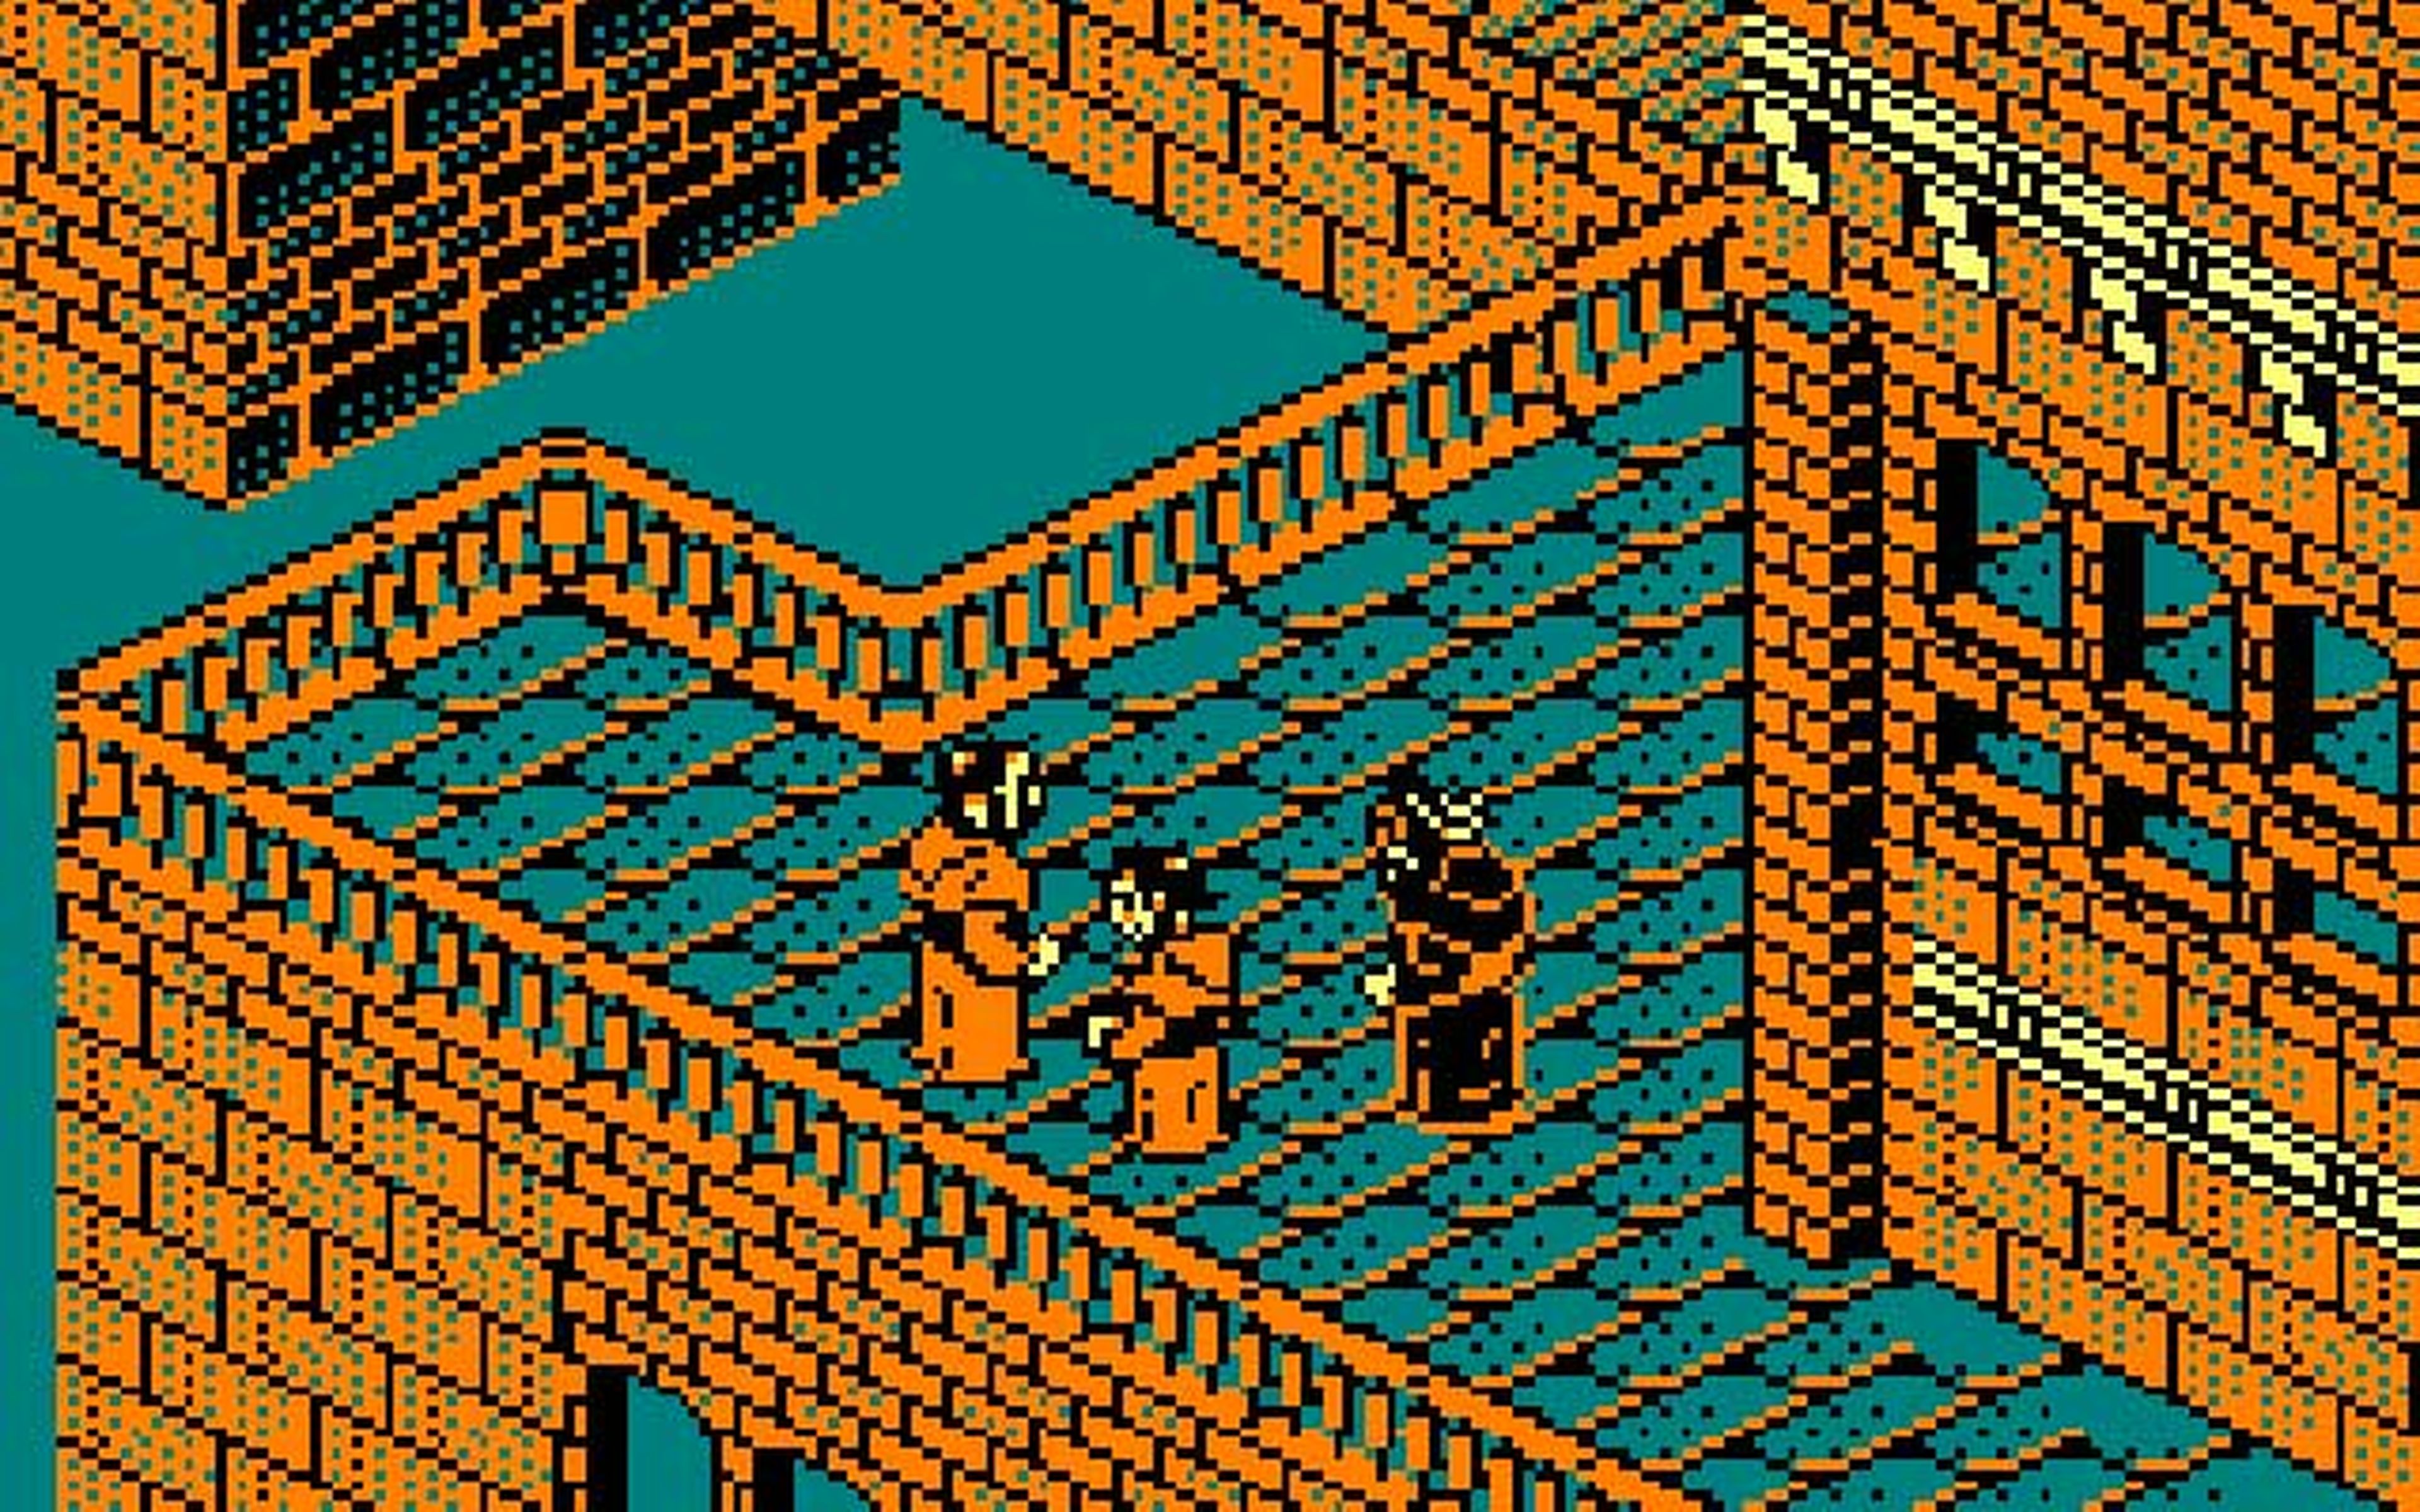 La abadía del crimen - Un juego inspirado en Umberto Eco